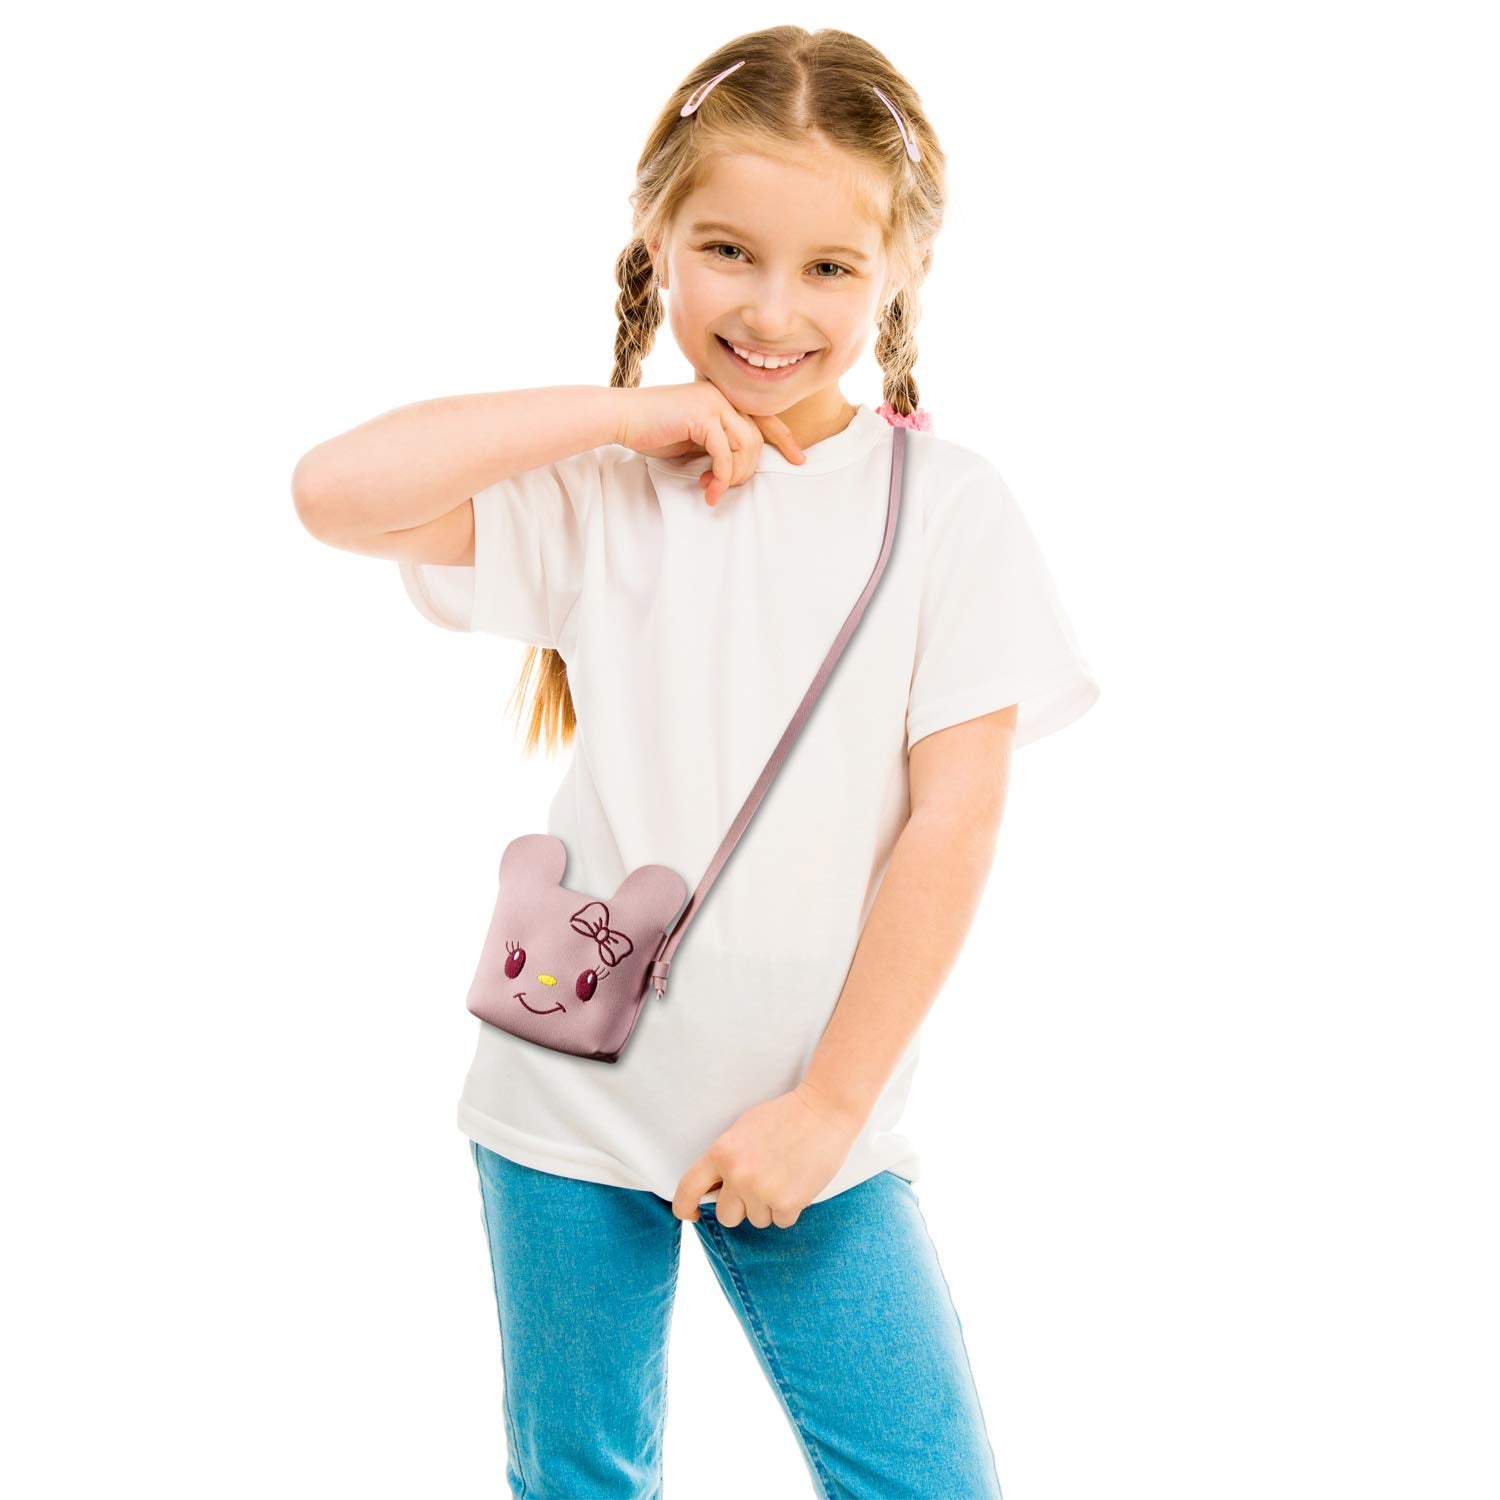 Little Girls Purse Cute Cartoon Shoulder Crossbody Bag For Kids Girls Toddler - ebowsos